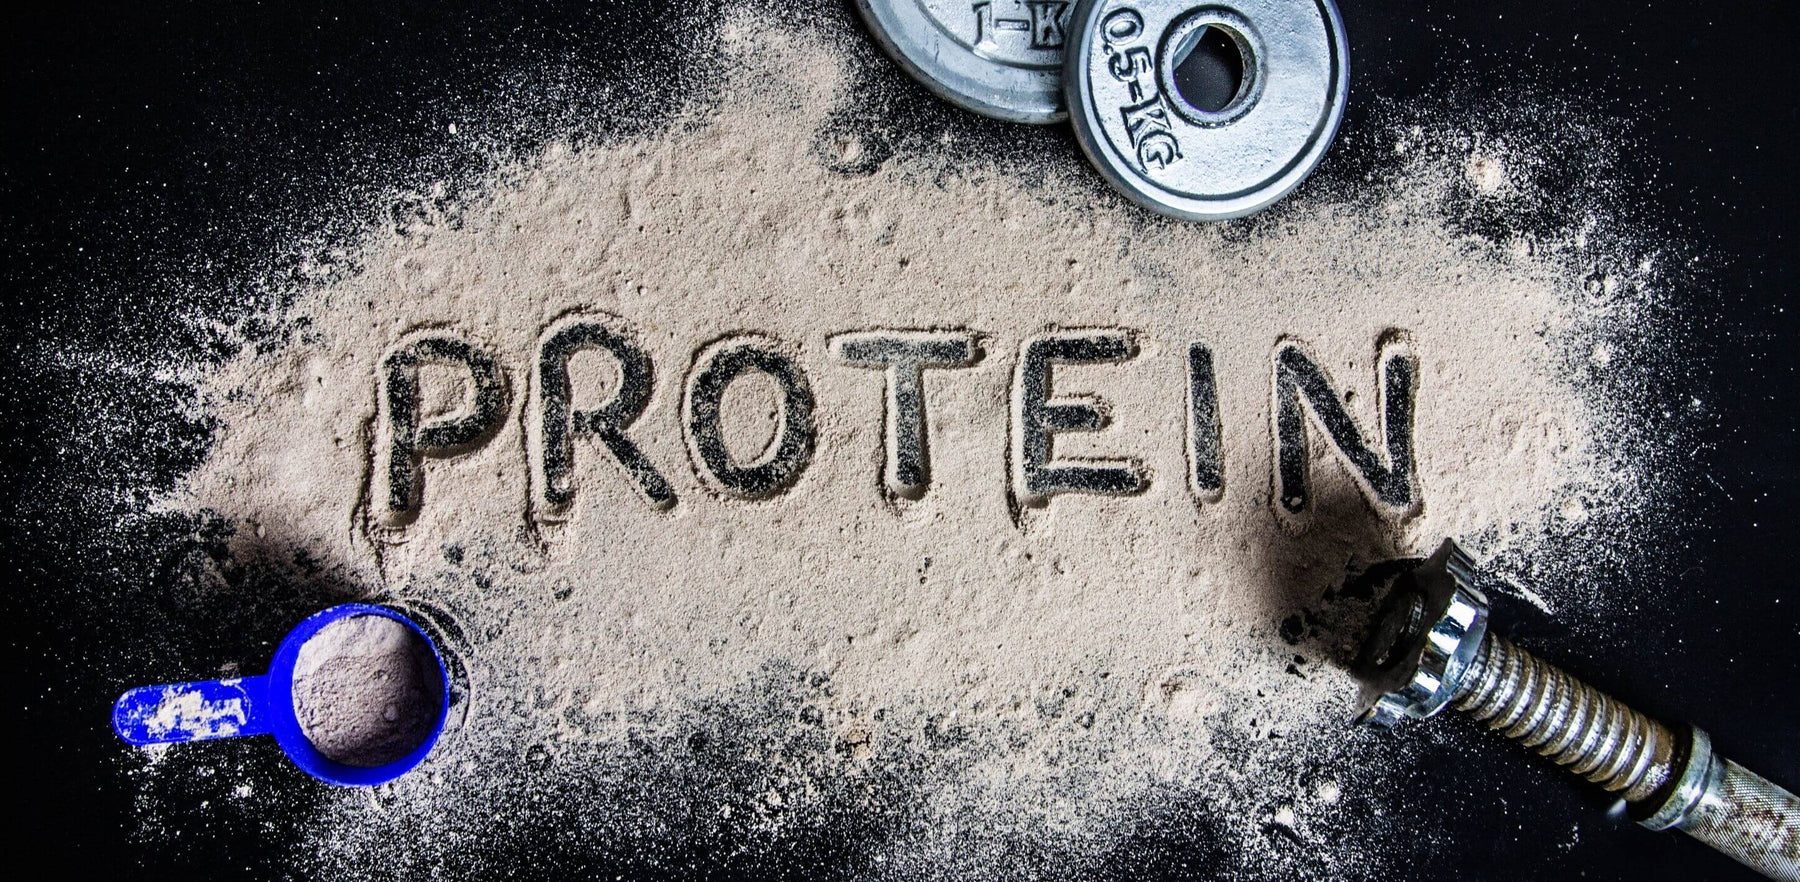 Mikä on proteiinin merkitys lihaskasvussa? Fitvalmennus